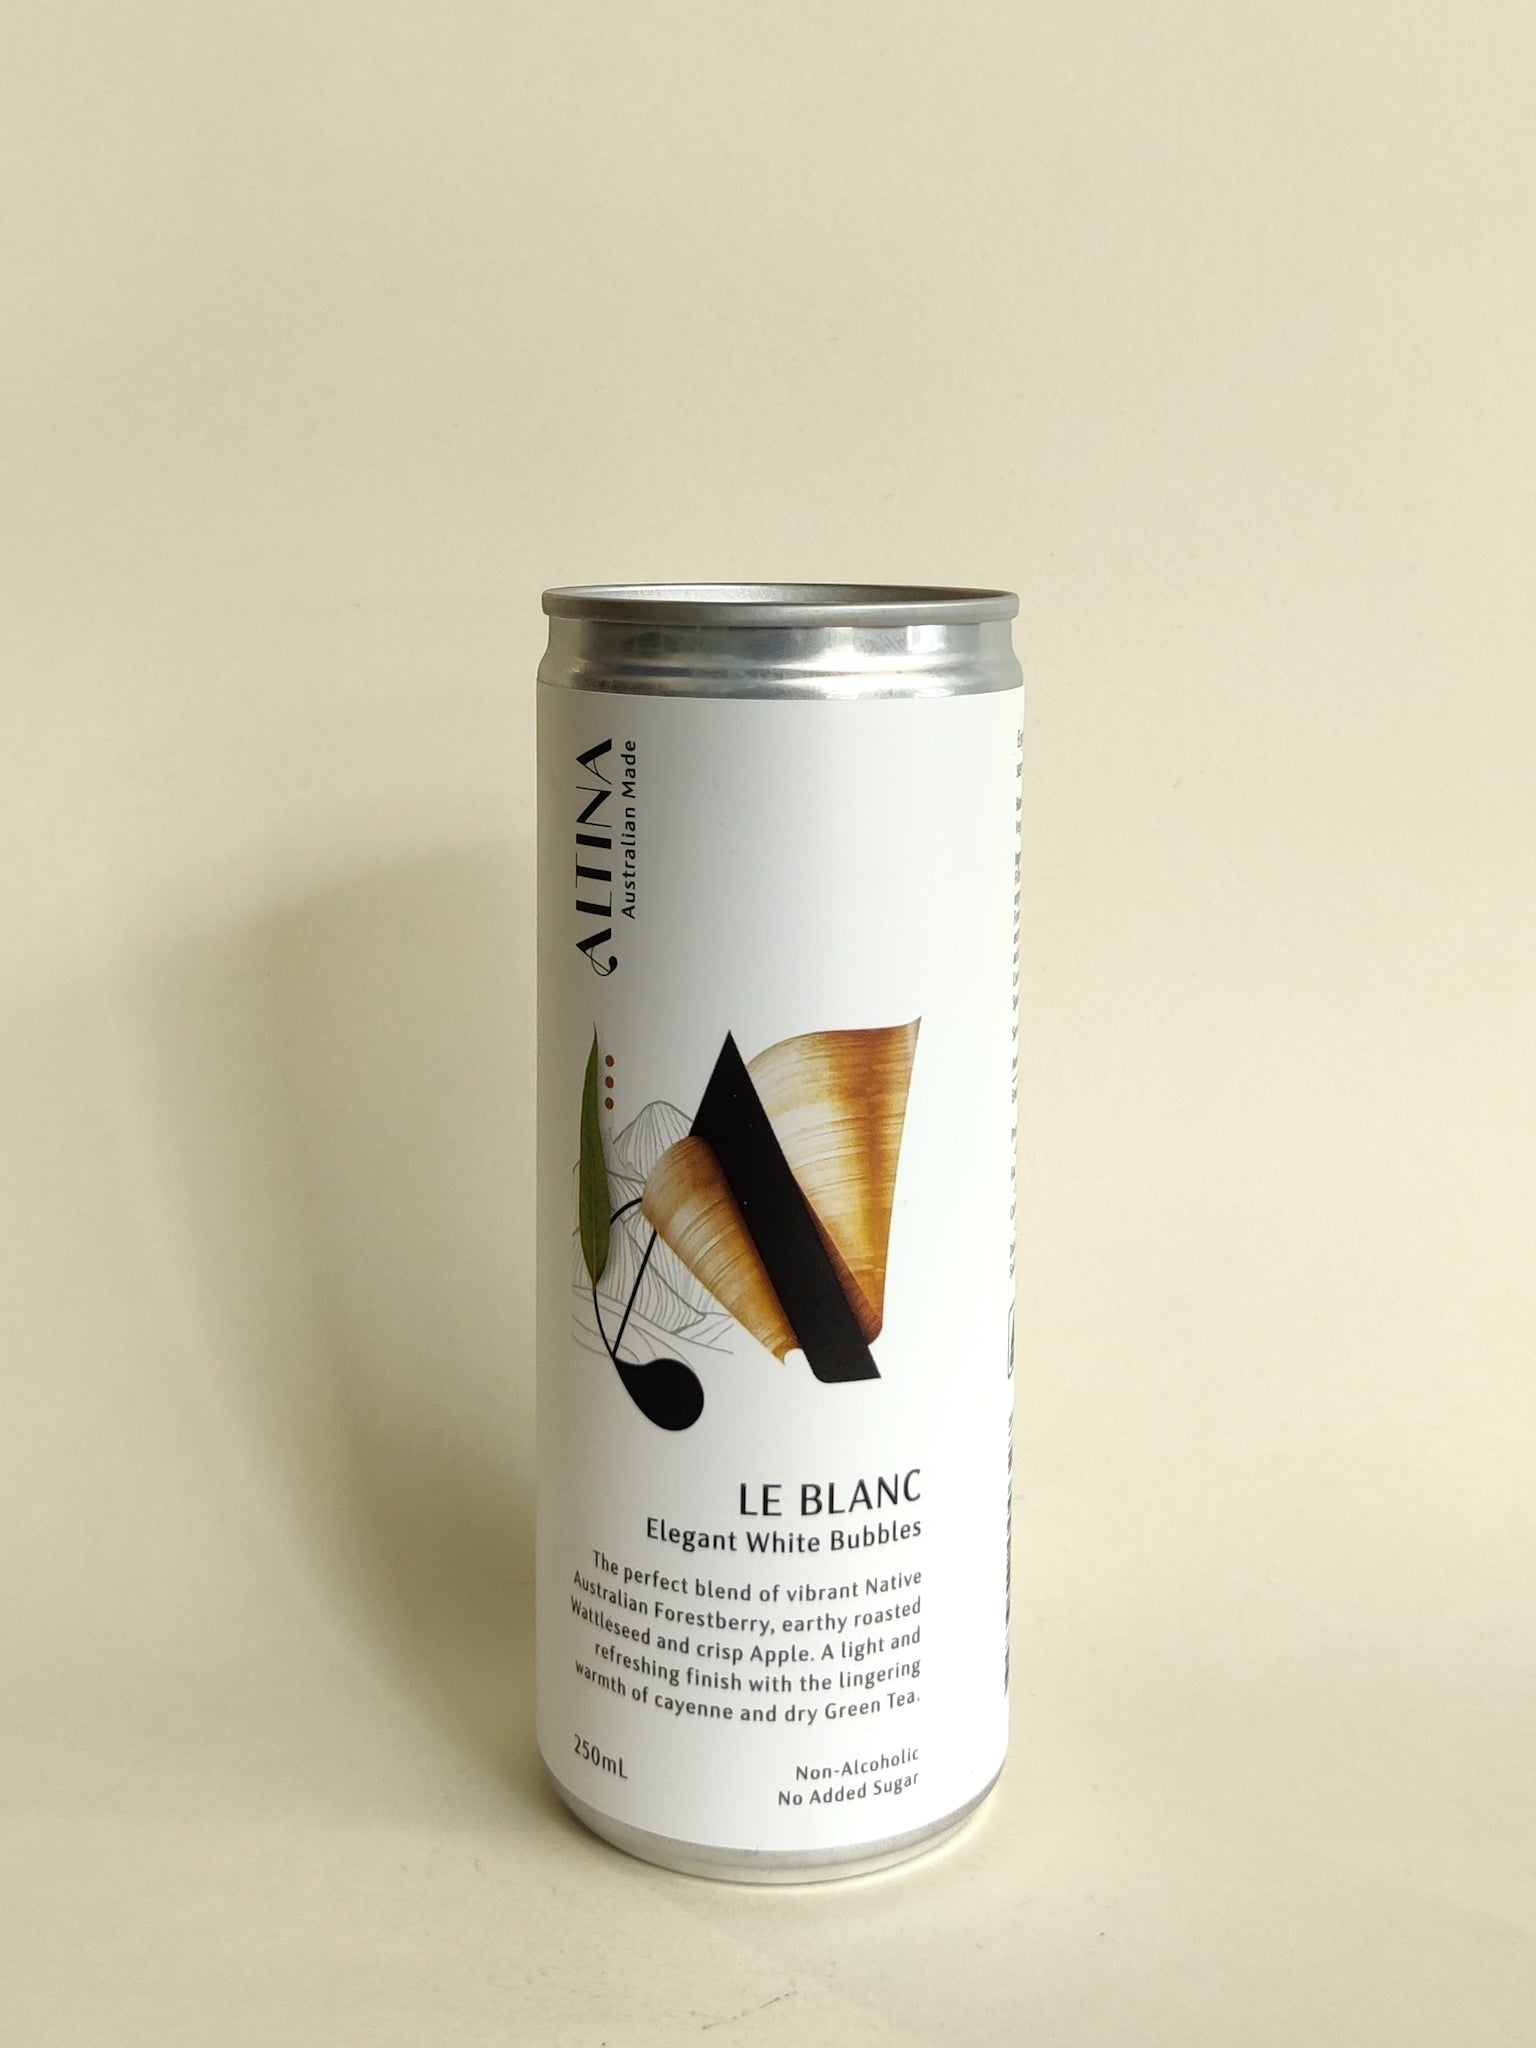 A can of Altina Le Blanc Non-Alcoholic Sparkling.